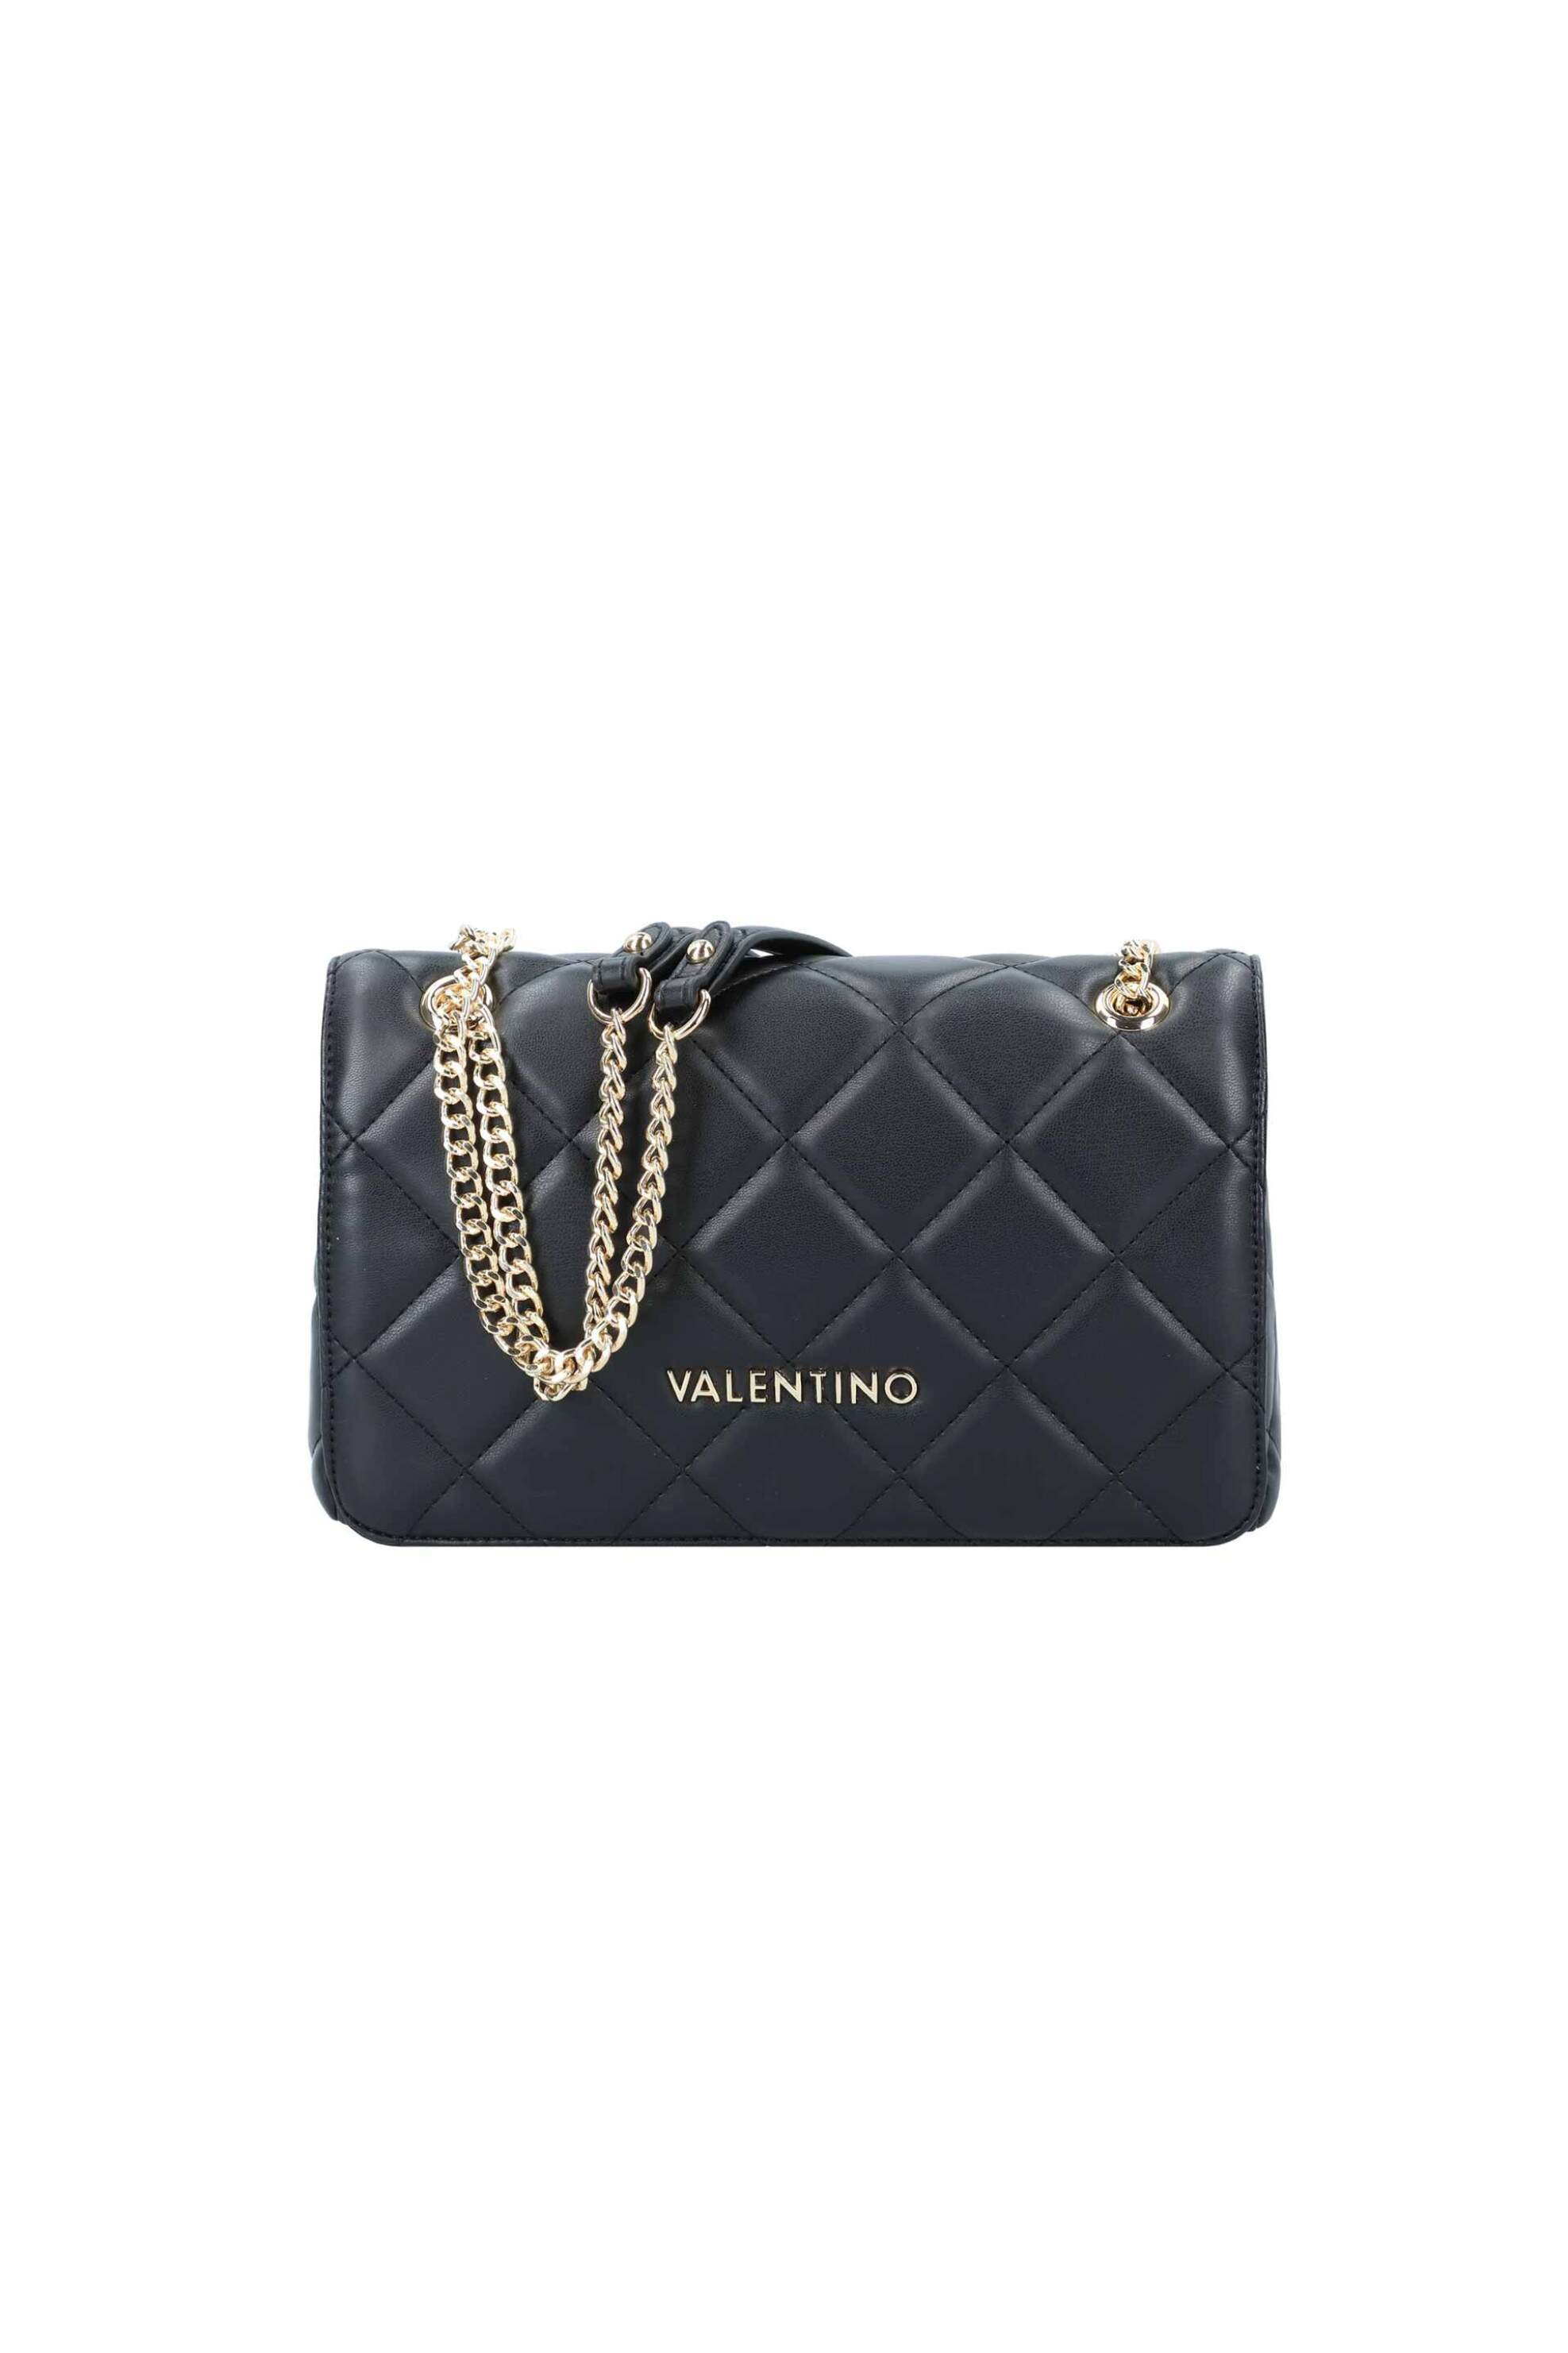 Γυναίκα > ΤΣΑΝΤΕΣ > Τσάντες Ώμου & Shopper Bags Valentino γυναικεία τσάντα ώμου με καπιτονέ σχέδιο μονόχρωμη "Ocarina" - 55KVBS3KK02R/OC Μαύρο